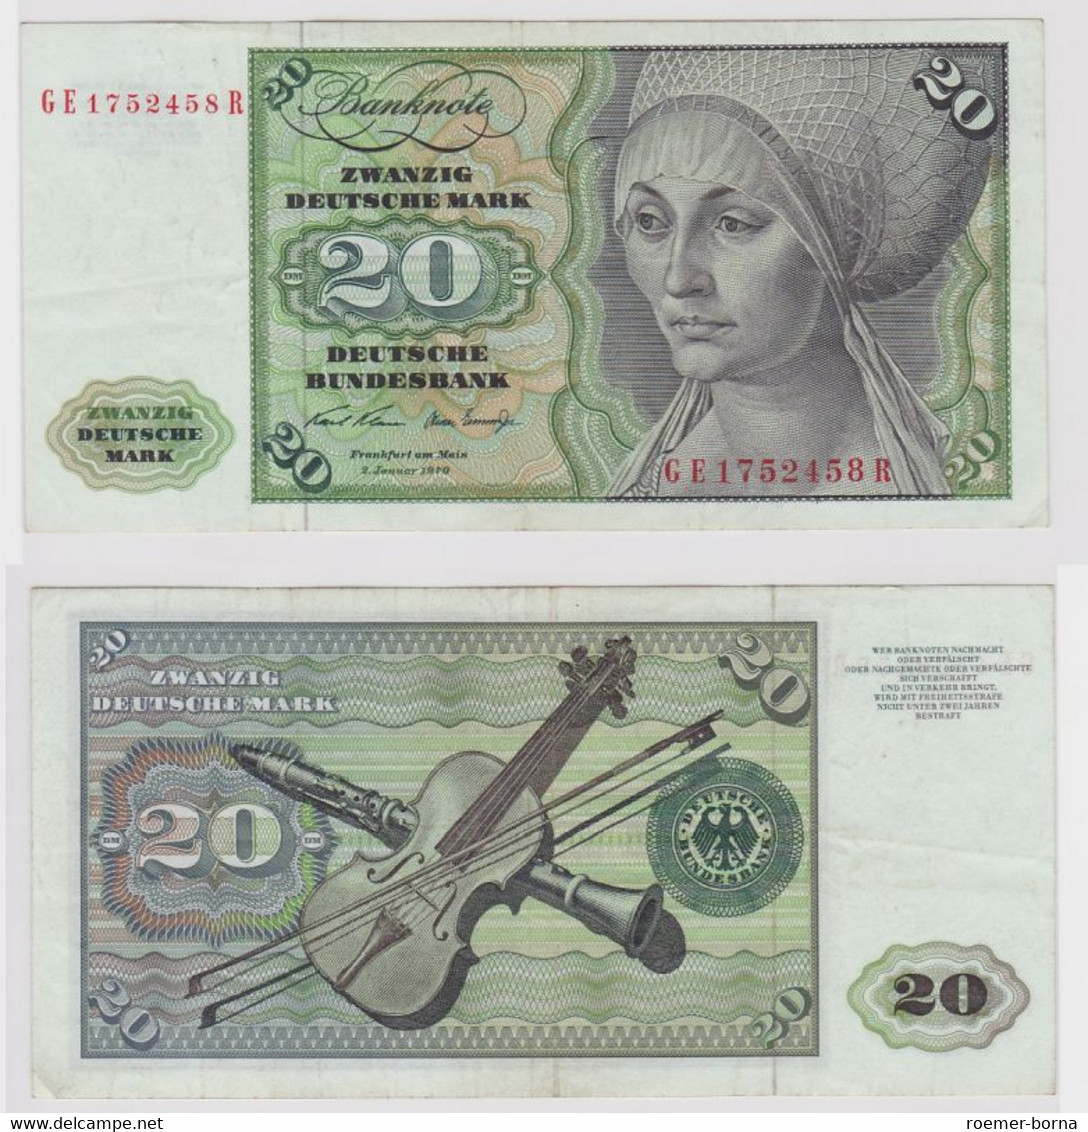 T115145 Banknote 20 DM Deutsche Mark Ro. 271b Schein 2.Jan. 1970 KN GE 1752458 R - 20 DM